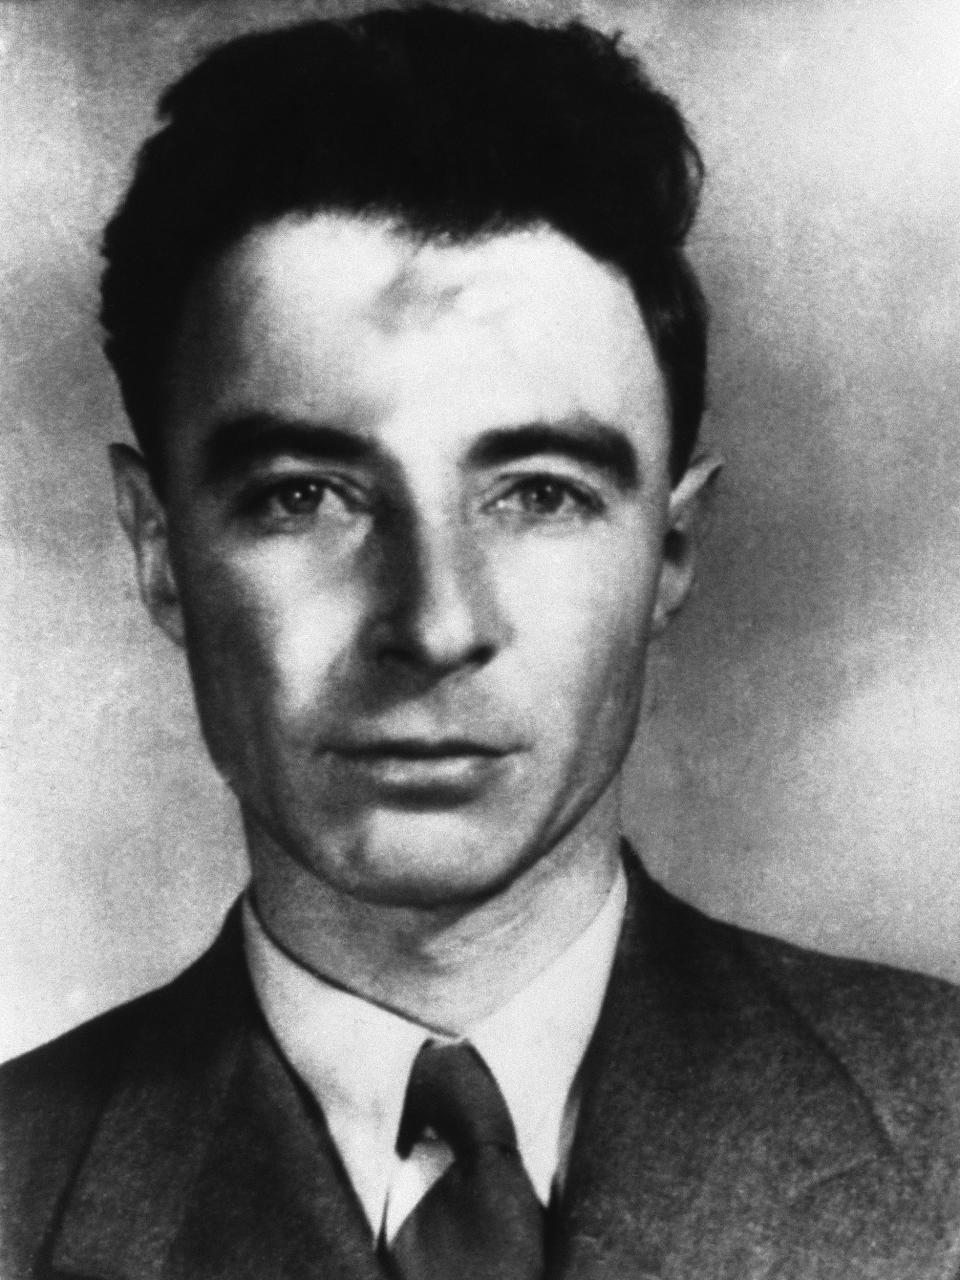 J. Robert Oppenheimer in 1945.